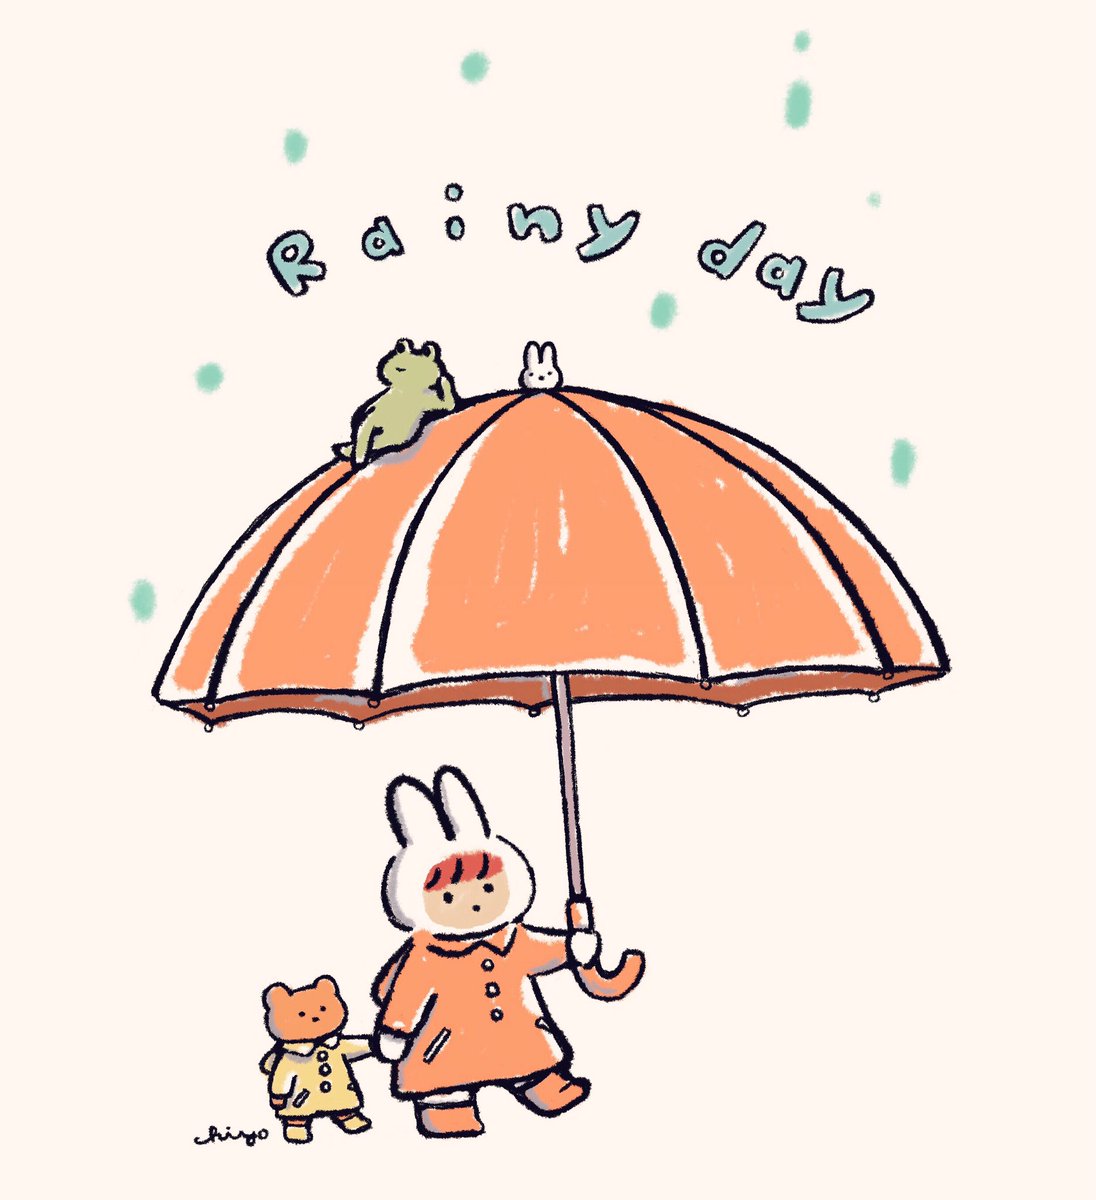 Chiyo در توییتر 雨の日 Rainy Day 今日のうさおさん 14 Chiyoillust うさおさん ほっぺちゃん 雨 梅雨 Rain Rainyday うさぎ クマ Rabbit Bear Illustration イラスト 絵 絵本 漫画 Comic Manga Picturebook T Co Pmltjv7ywu